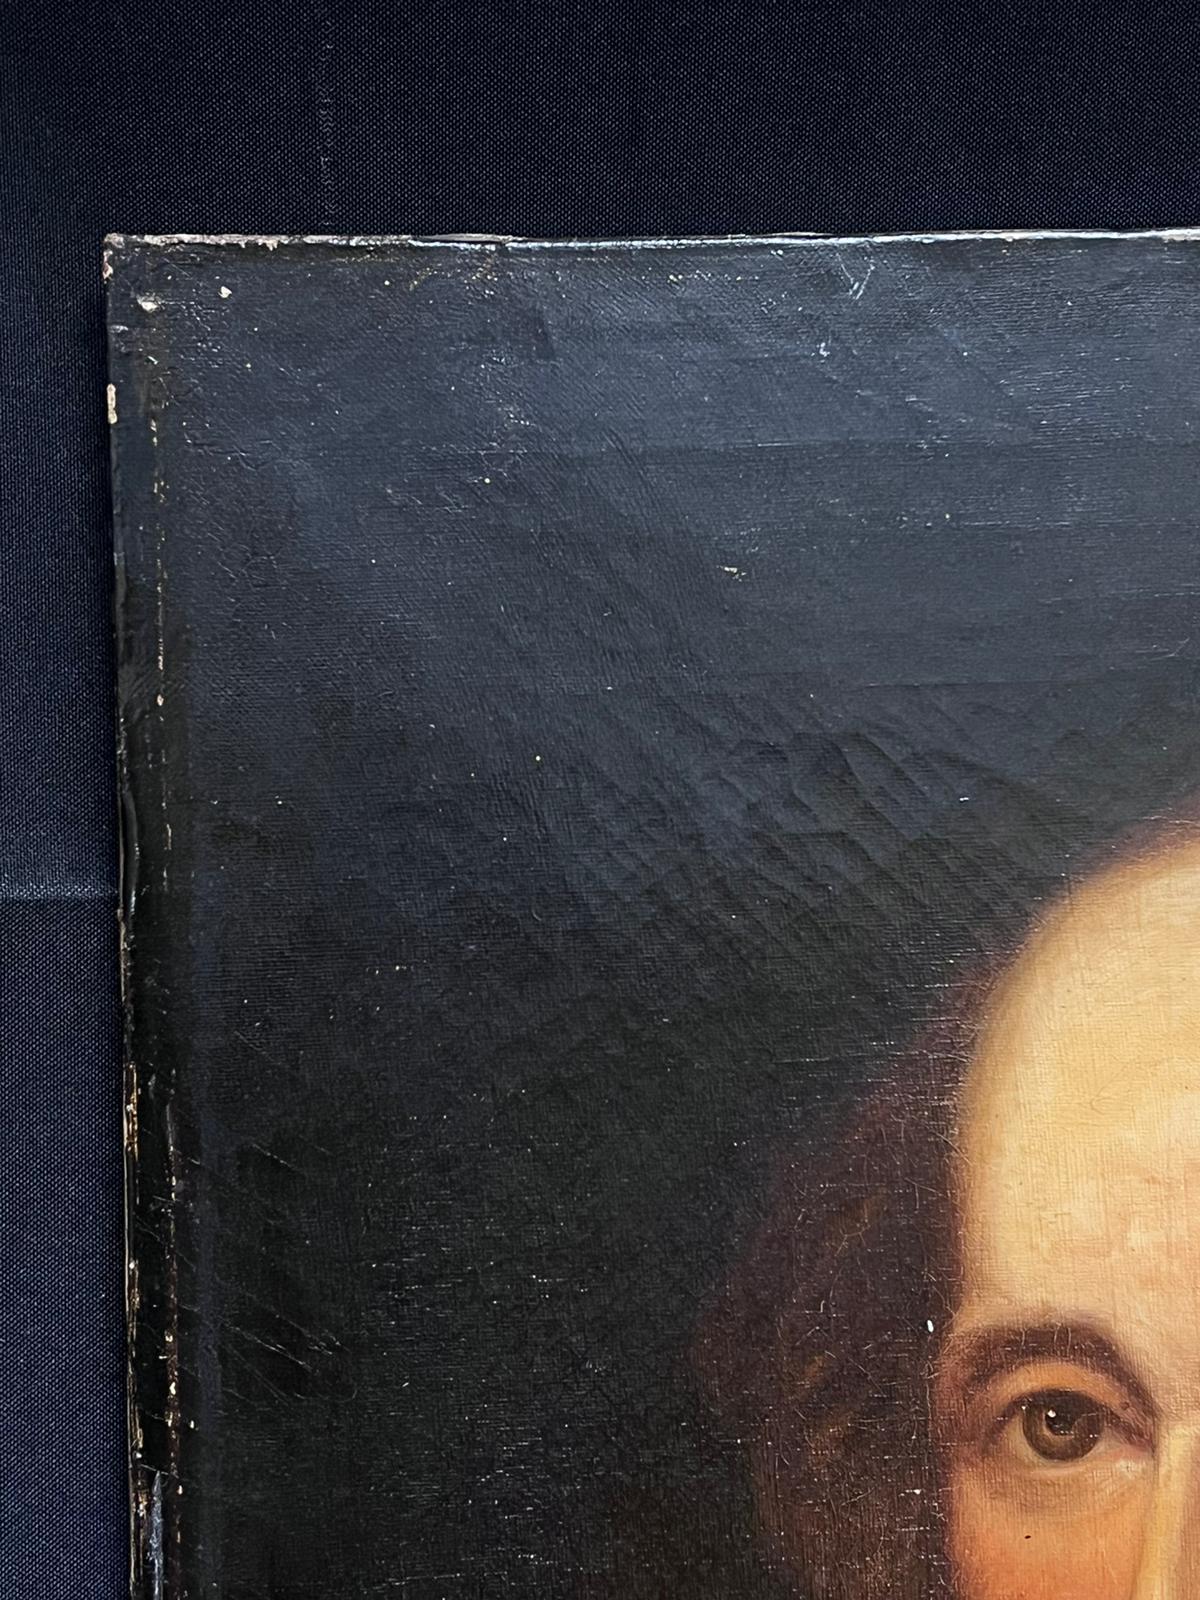 Antikes britisches Ölgemälde, Porträt von William Shakespeare, Öl auf Leinwand, feines Ölgemälde (Alte Meister), Painting, von English 18th Century 